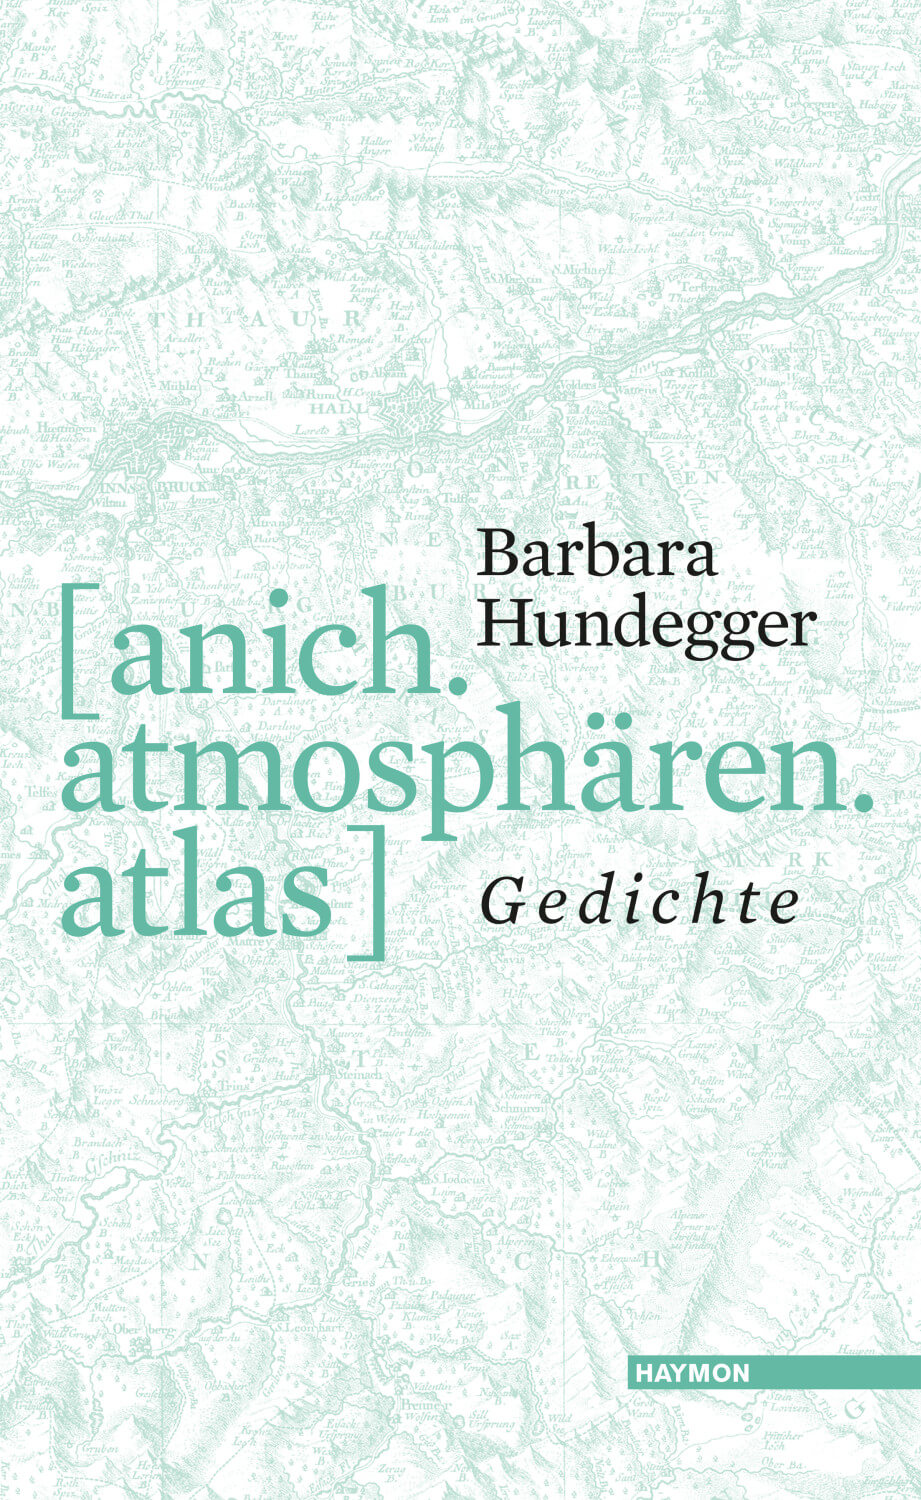 Barbara Hundegger: [anich. atmosphären. atlas]